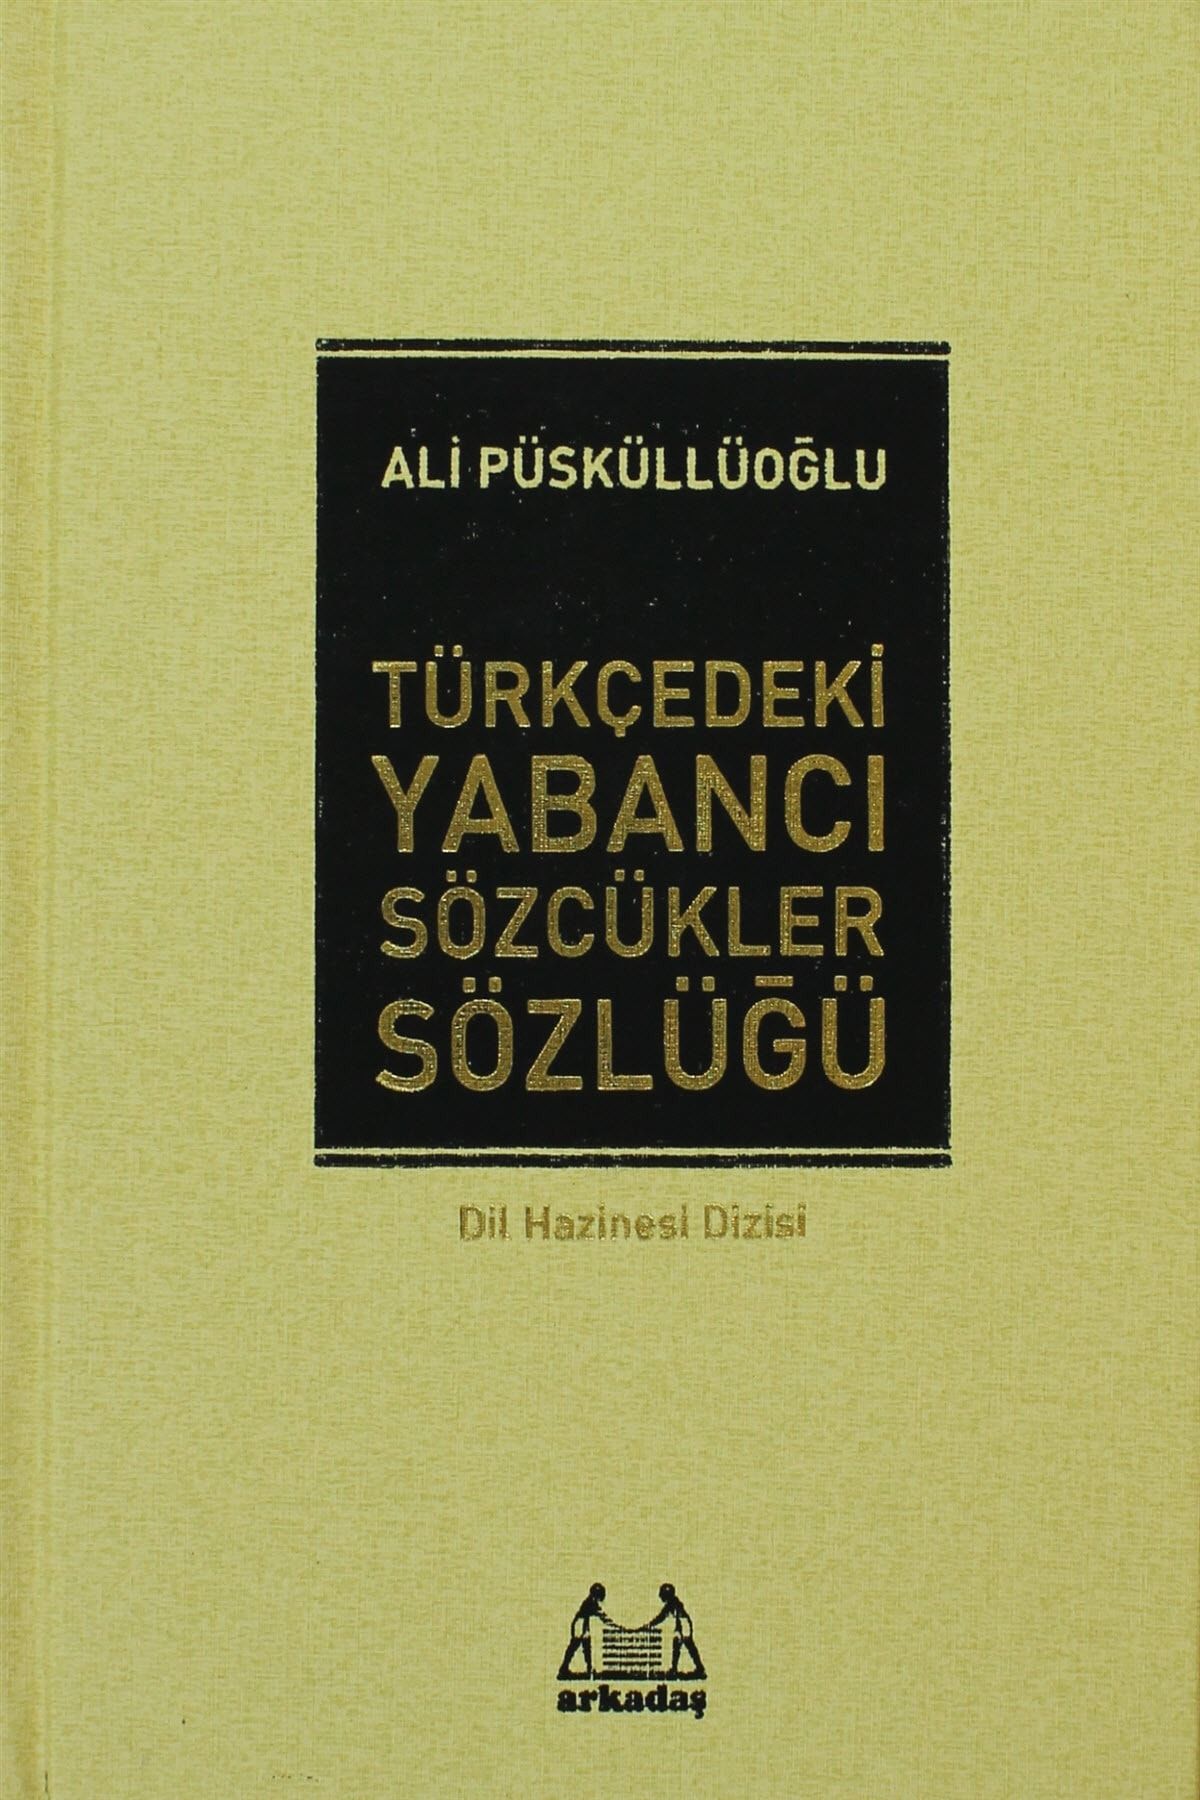 Arkadaş Yayıncılık Türkçedeki Yabancı Sözcükler Sözlüğü kitabı - Ali Püsküllüoğlu - Arkadaş Yayınları